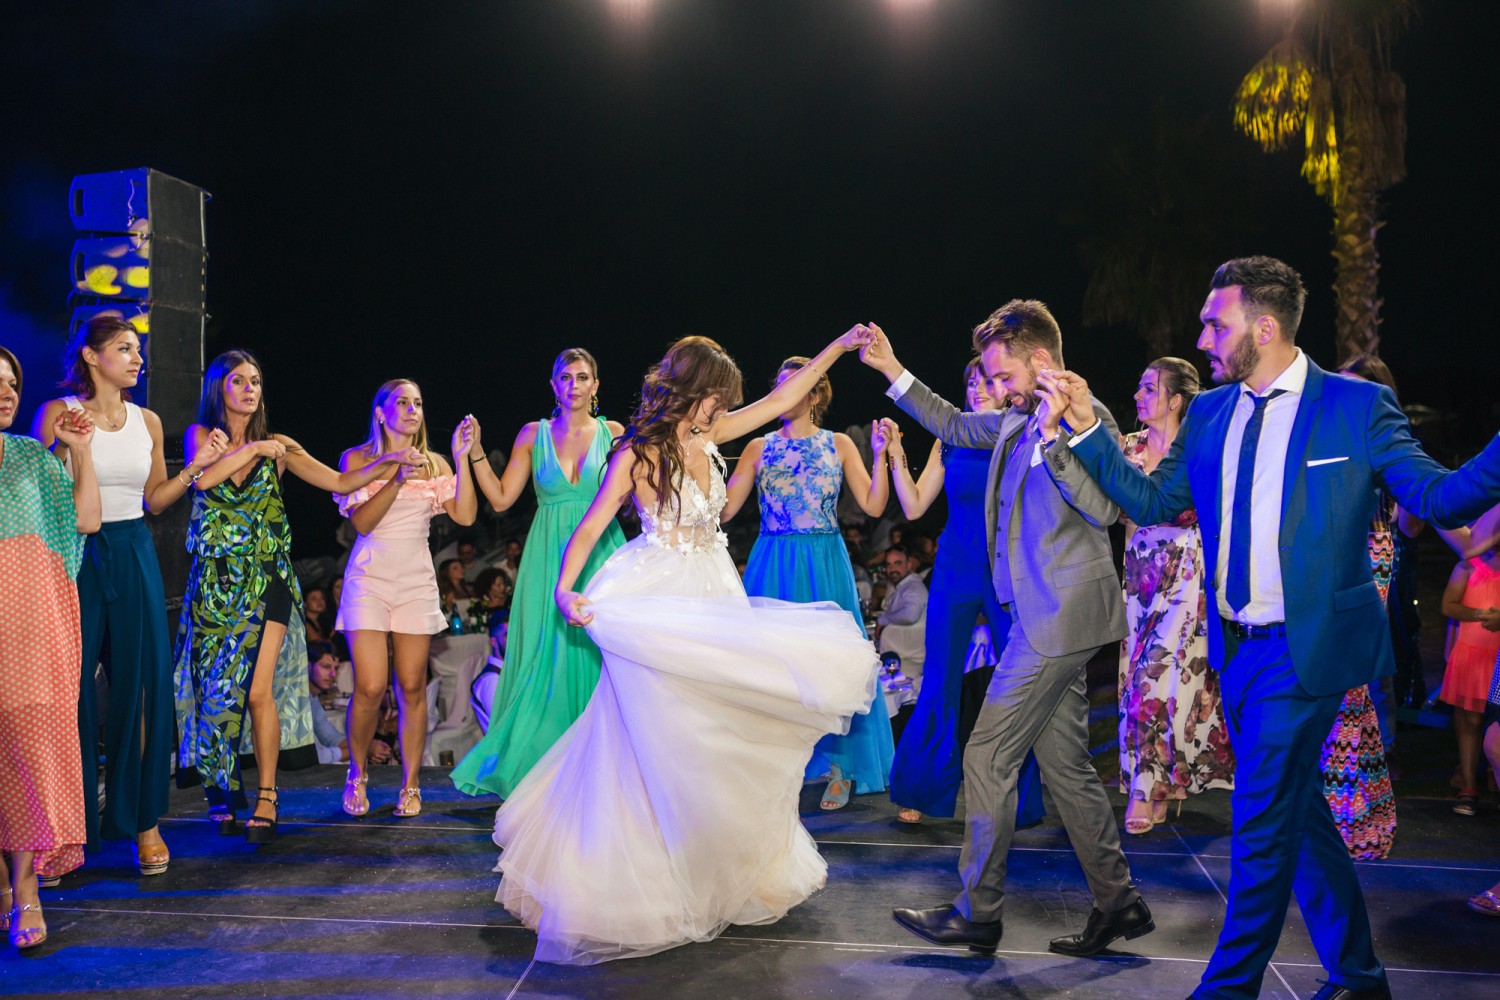 Φωτογραφίες γάμου | Αλεξάνδρα & Δημήτρης στη Χαλκιδική